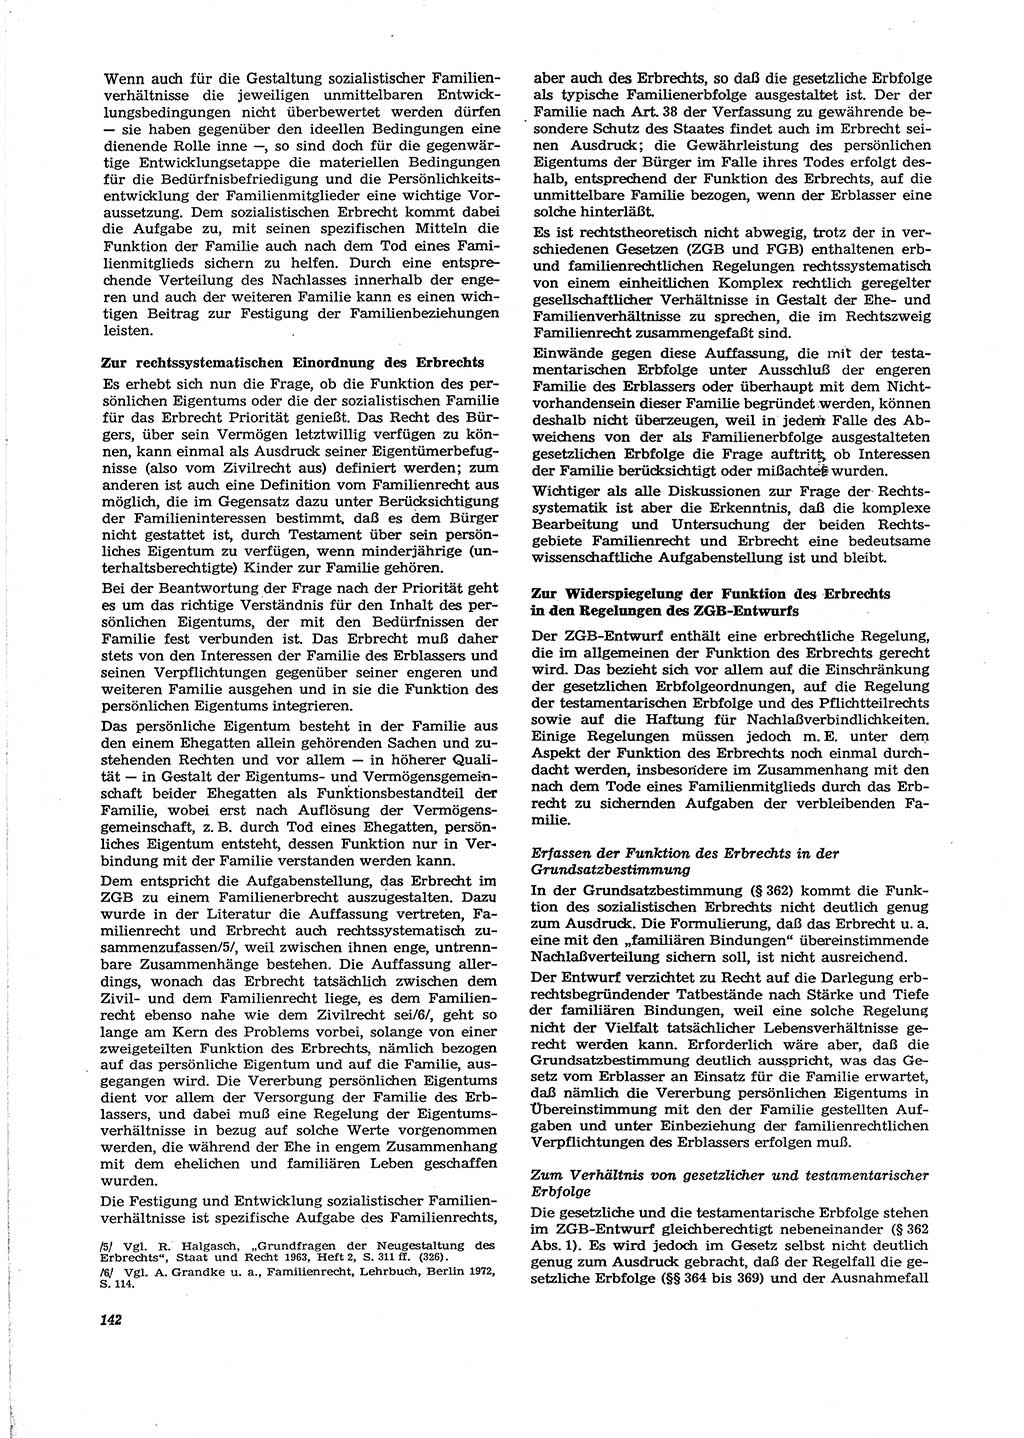 Neue Justiz (NJ), Zeitschrift für Recht und Rechtswissenschaft [Deutsche Demokratische Republik (DDR)], 29. Jahrgang 1975, Seite 142 (NJ DDR 1975, S. 142)